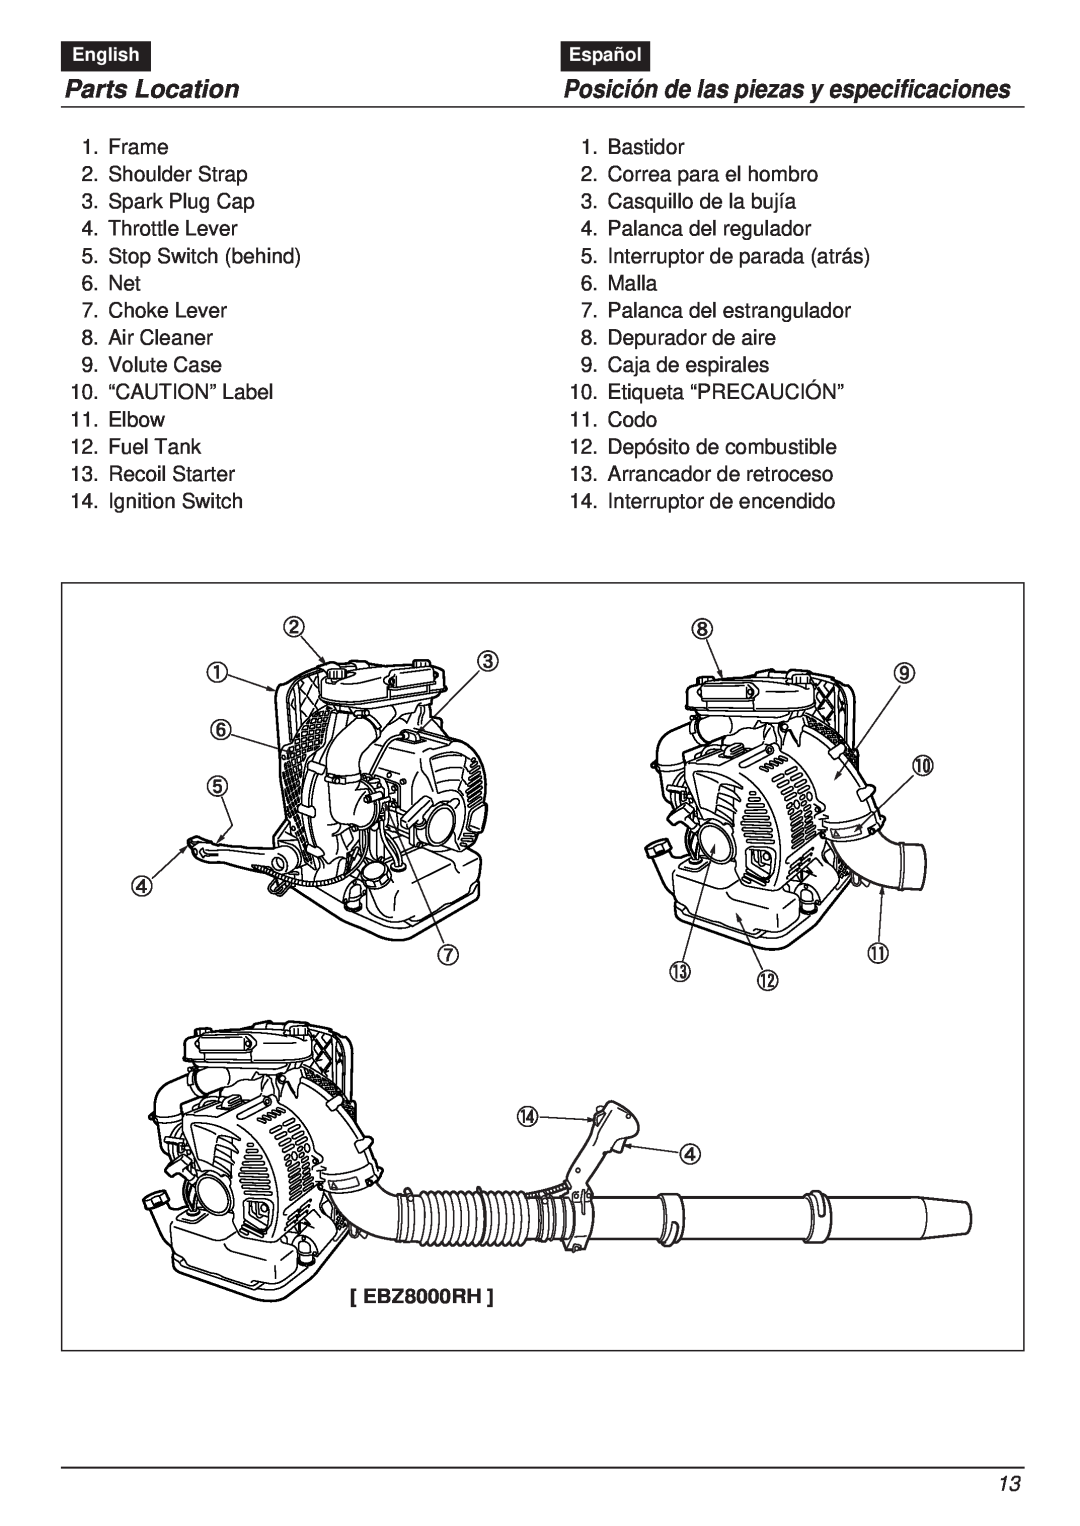 RedMax EBZ8000RH manual Parts Location, Posición de las piezas y especificaciones 